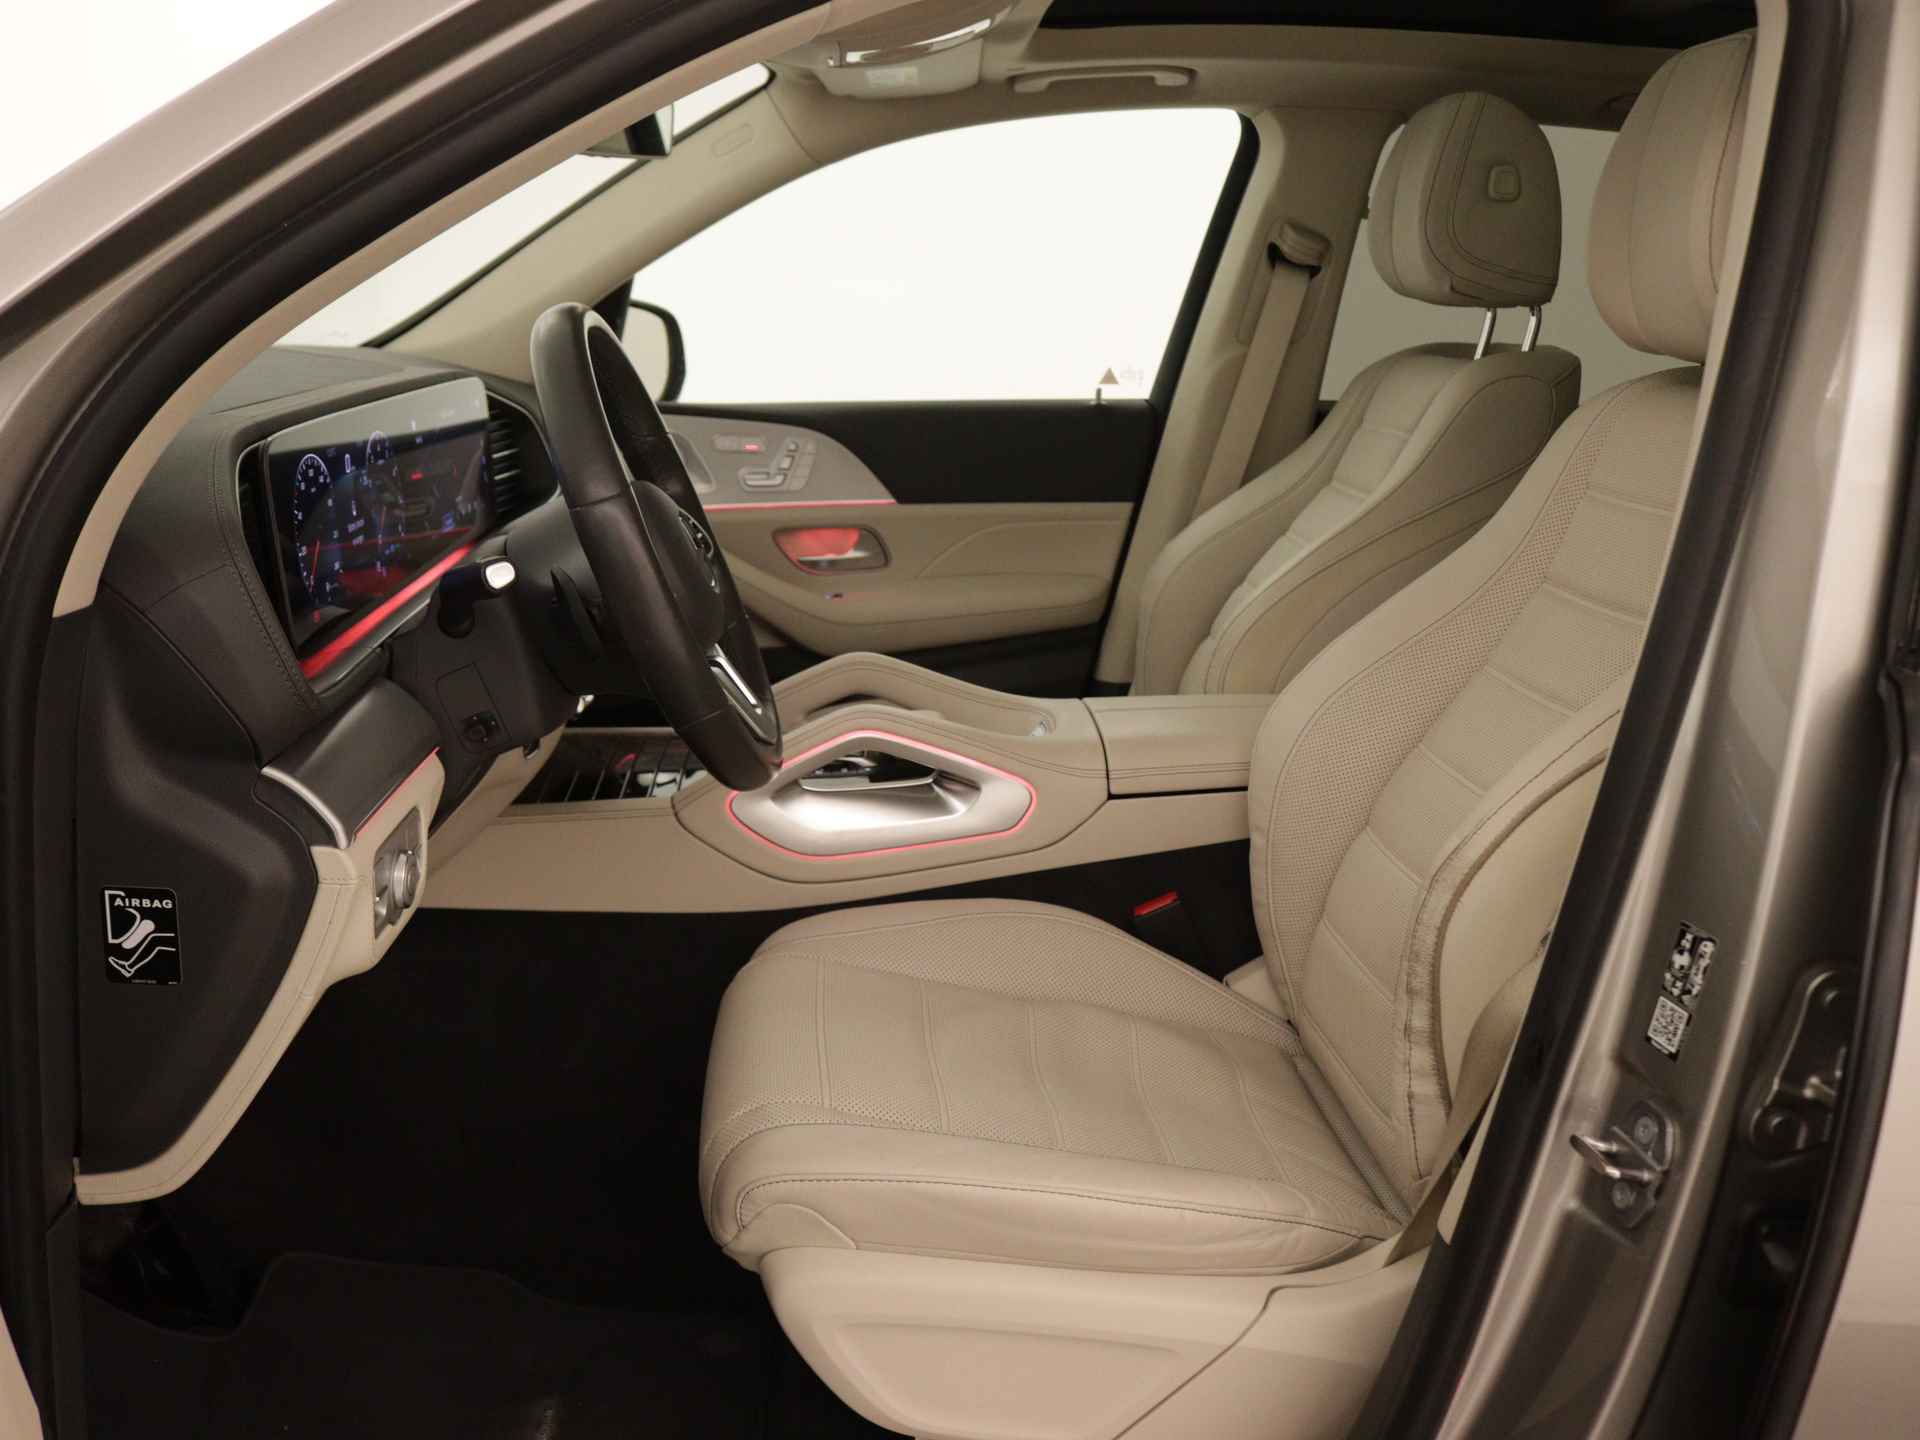 Mercedes-Benz GLE 450 4MATIC AMG Line Premium | Panoramadak | Luchtvering | Burmester | Navigatie | MBUX wide screen | Alarm klasse 3 | Parking support | inclusief 24 maanden MB Certified garantie voor europa - 16/39